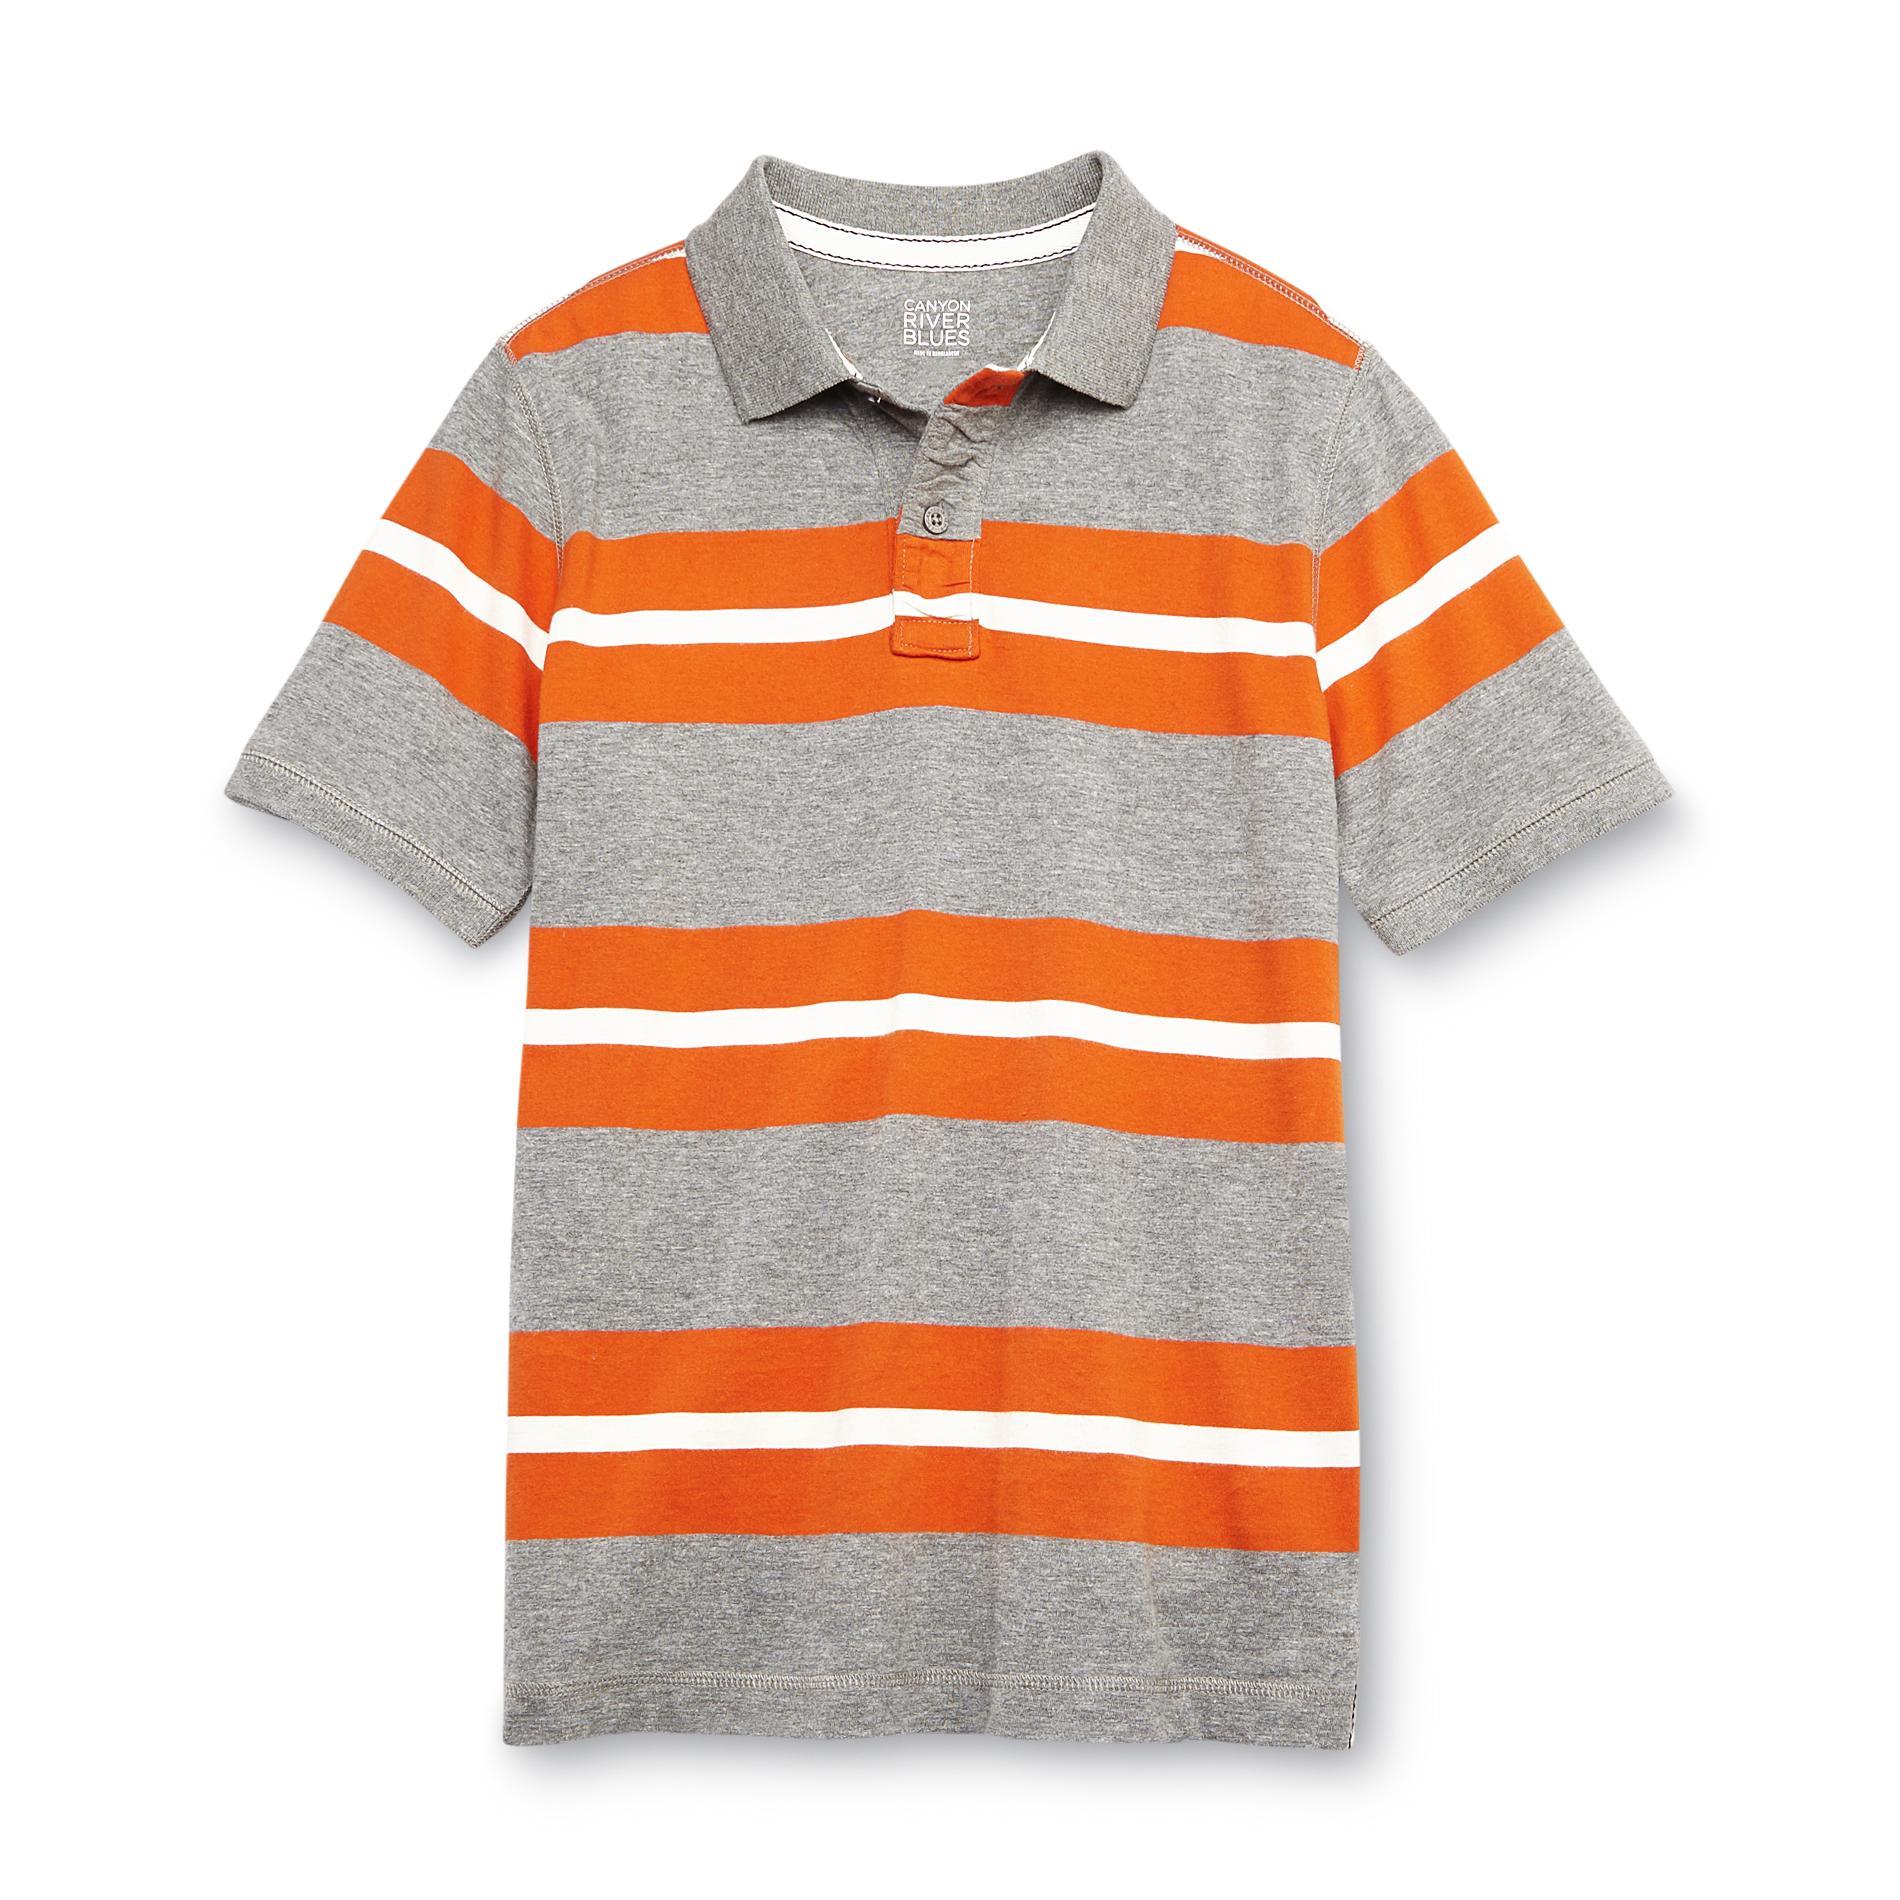 Canyon River Blues Boy's Polo Shirt - Striped